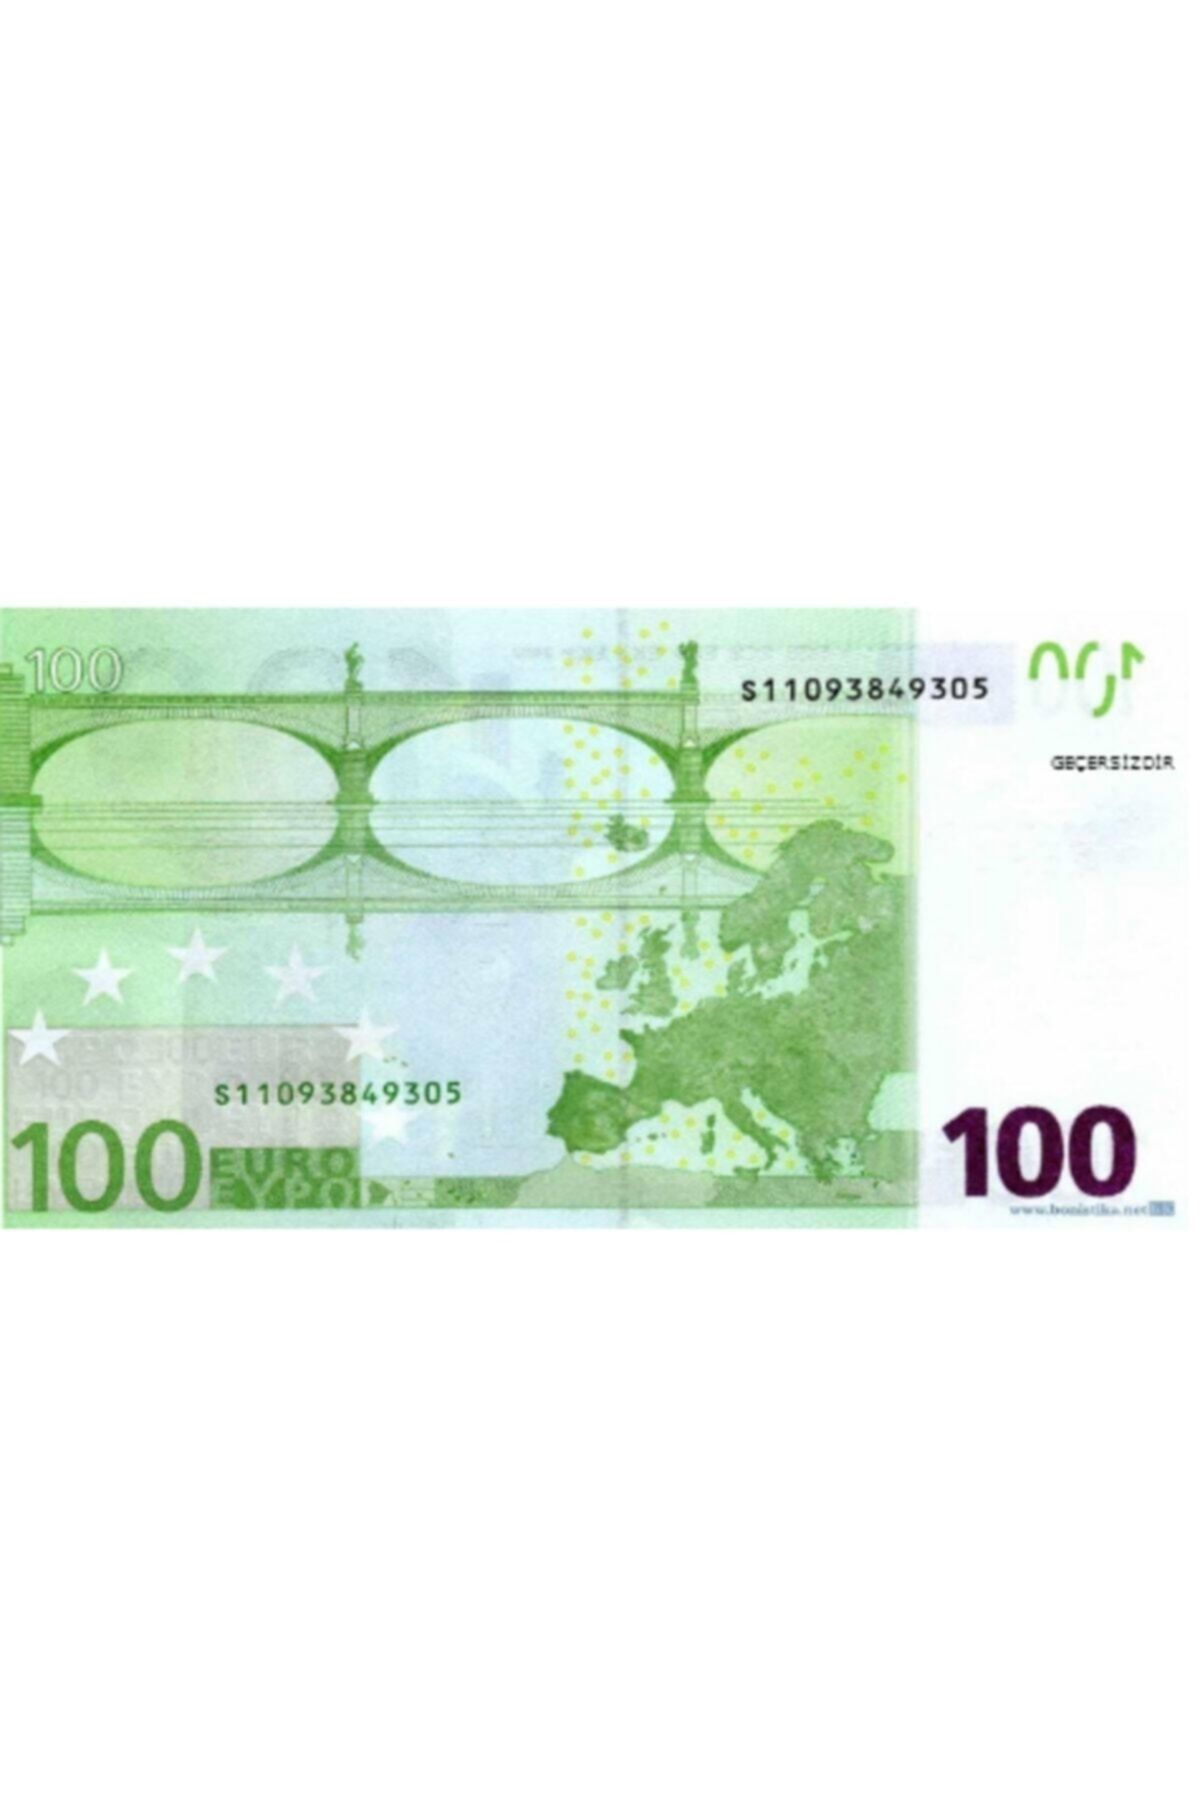 18 евро сколько. 100 Euro в Турции. Стоят ли в очках за 100 евро стёкла.